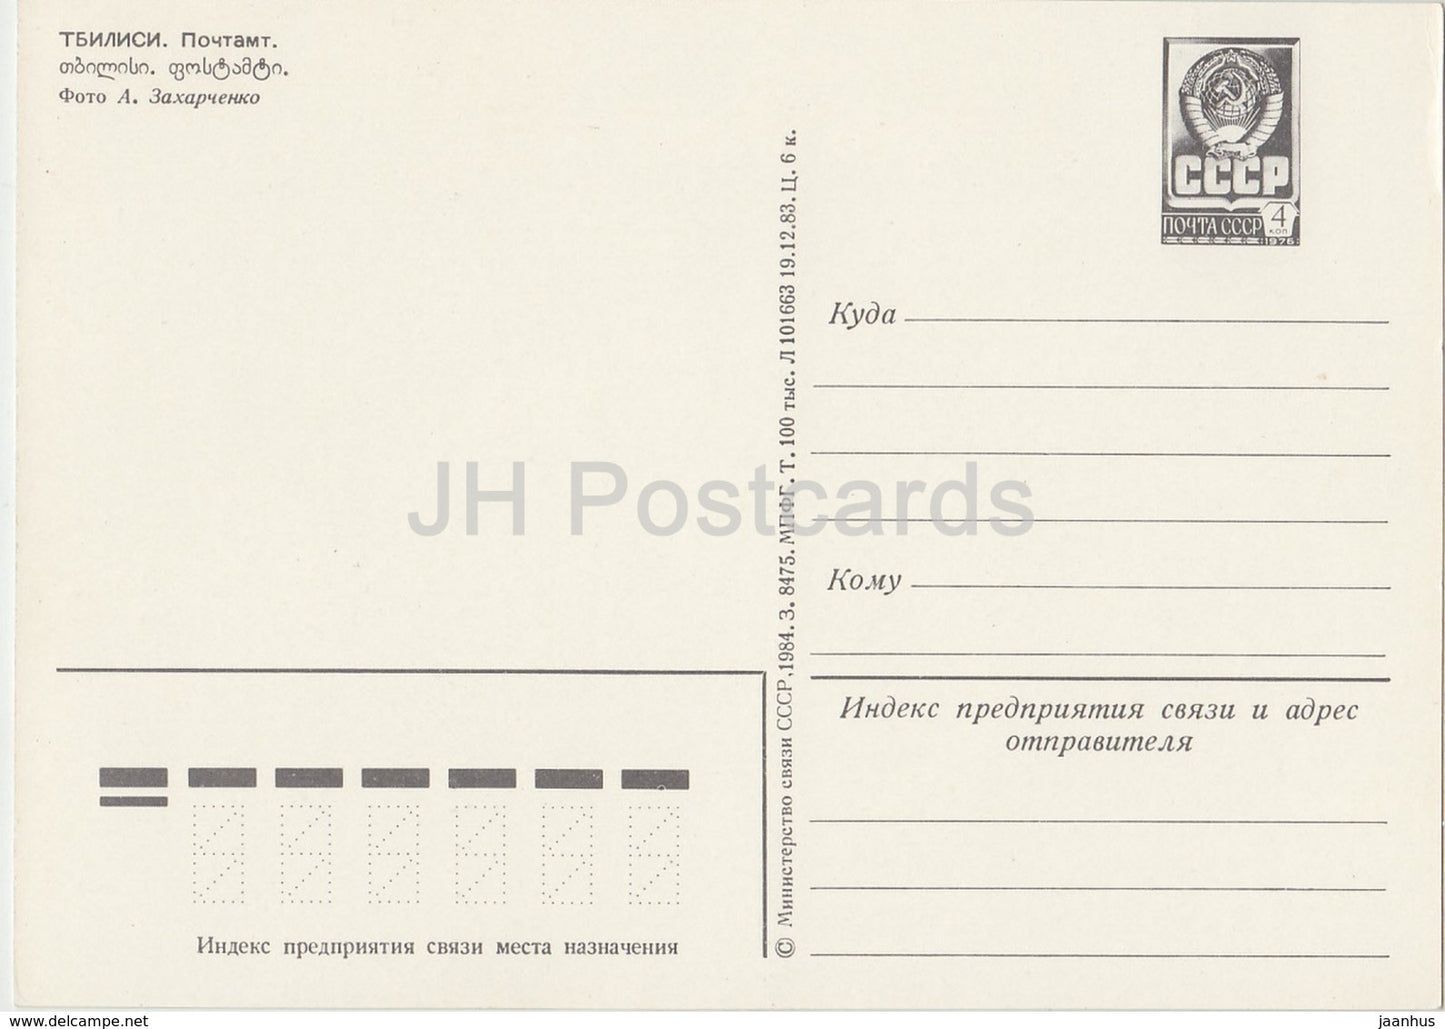 Tbilissi - Bureau postal - voiture Zhiguli - entier postal - 1984 - Géorgie URSS - inutilisé